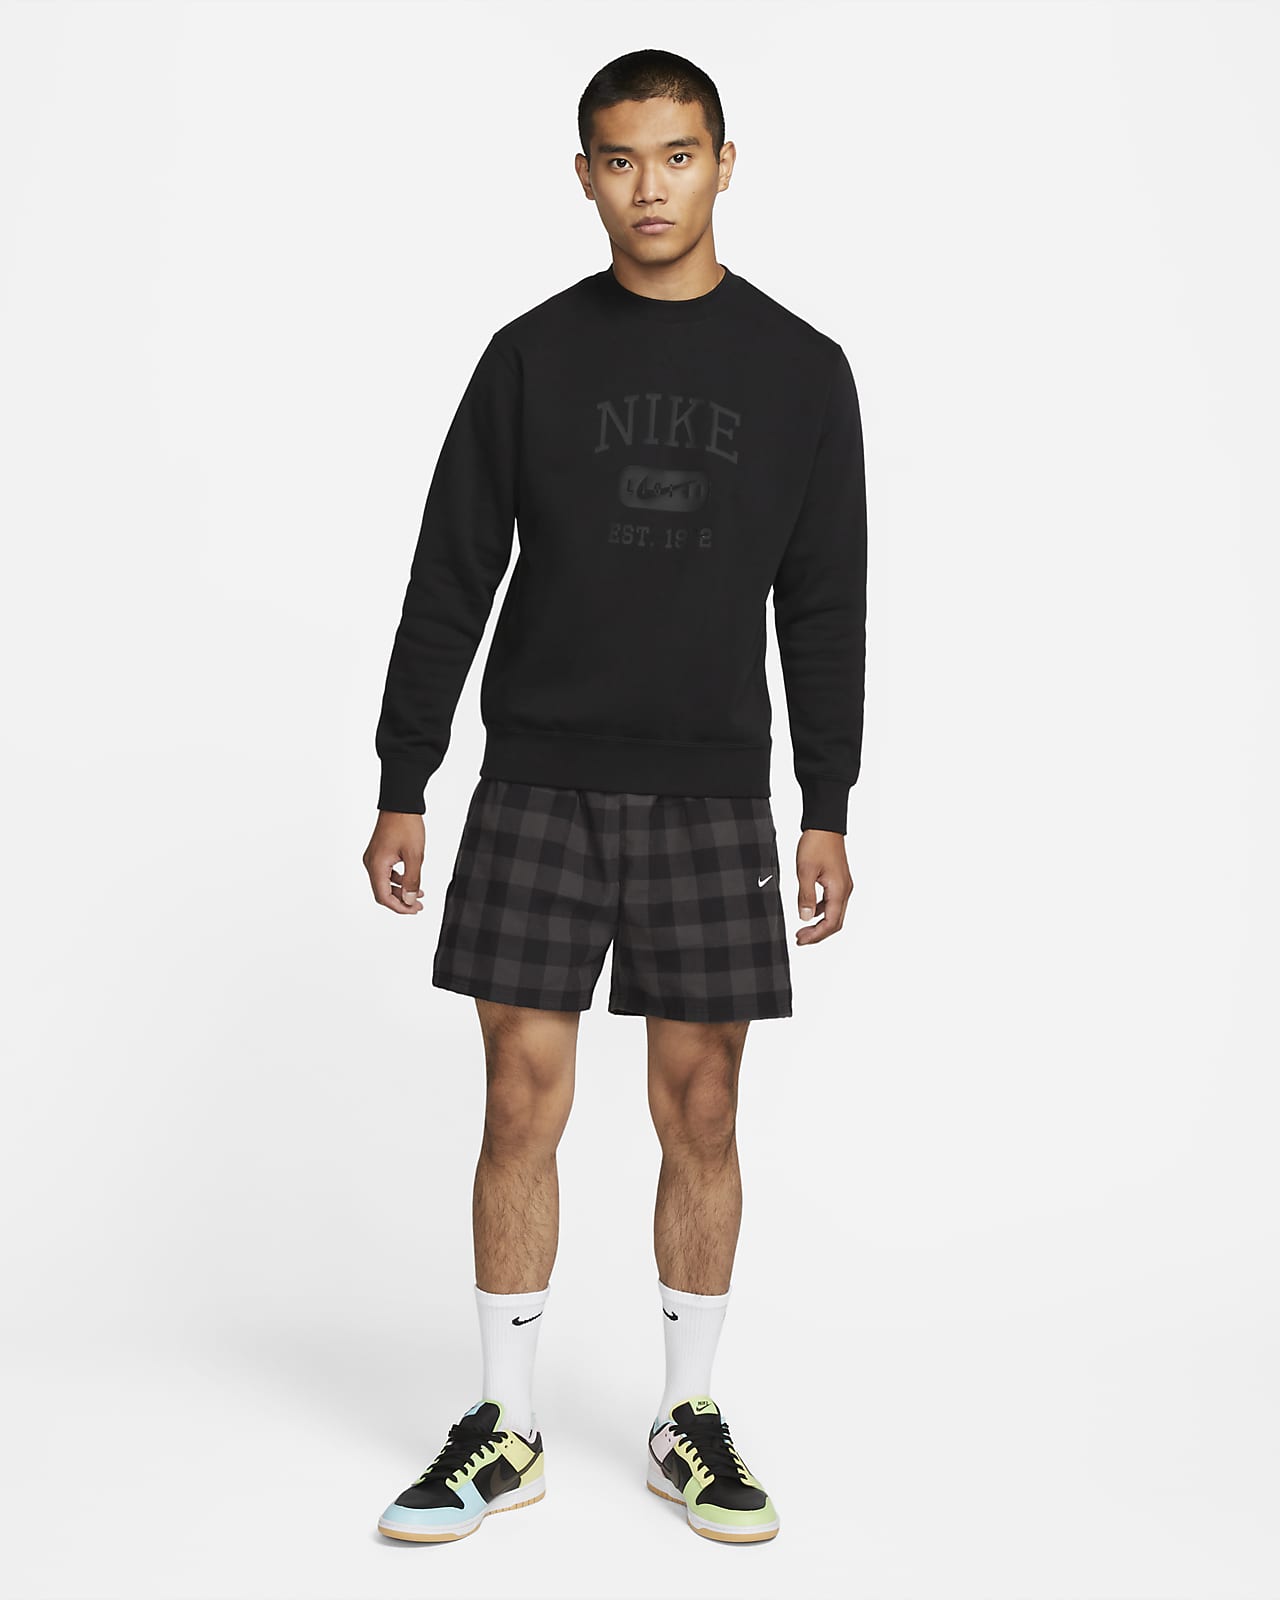 Nike Sportswear Men's Crew-Neck Sweatshirt. Nike JP